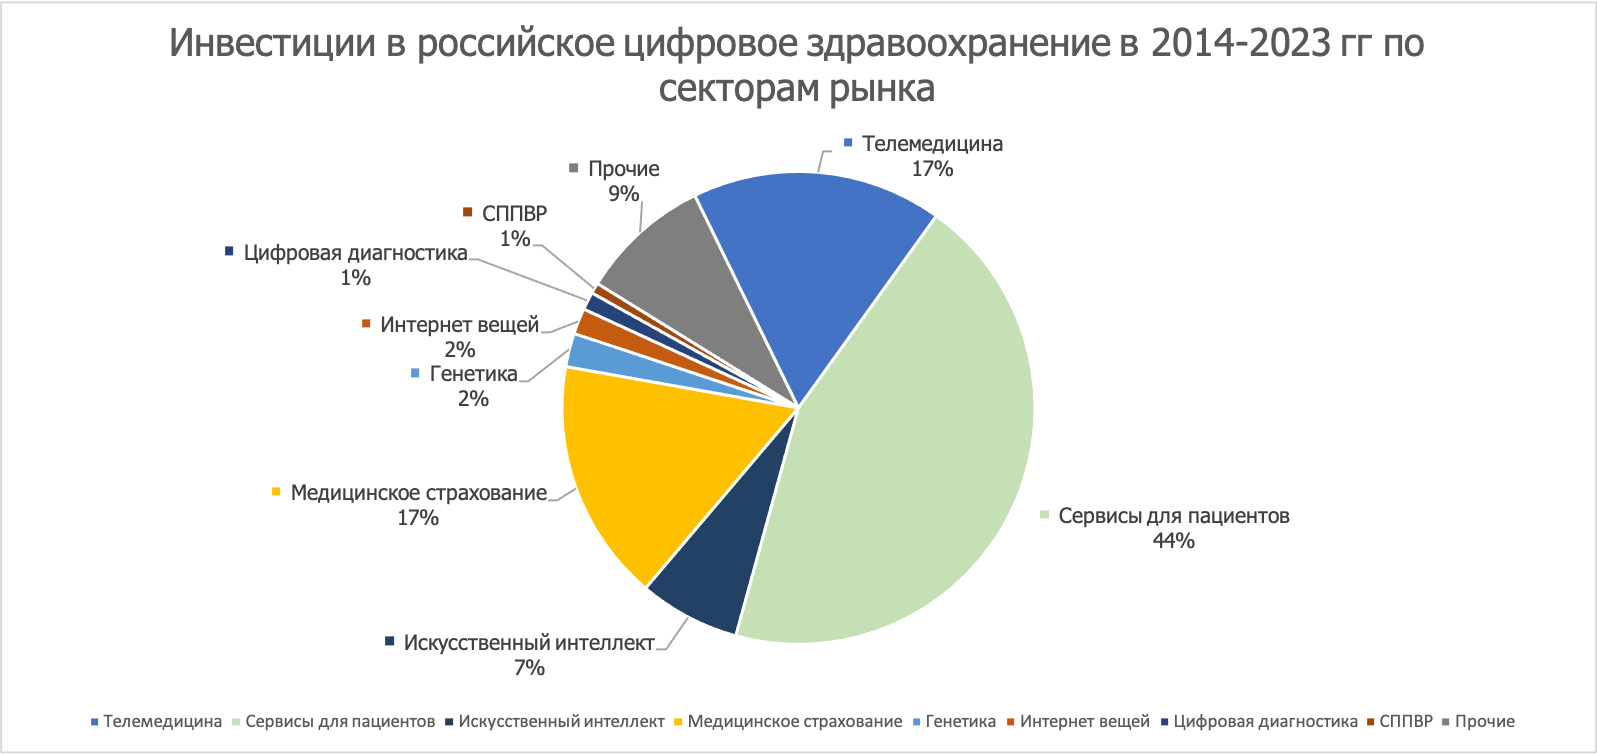 Инвестиции в российское цифровое здравоохранение по секторам рынка (группам продуктов), по данным компании К-Скай